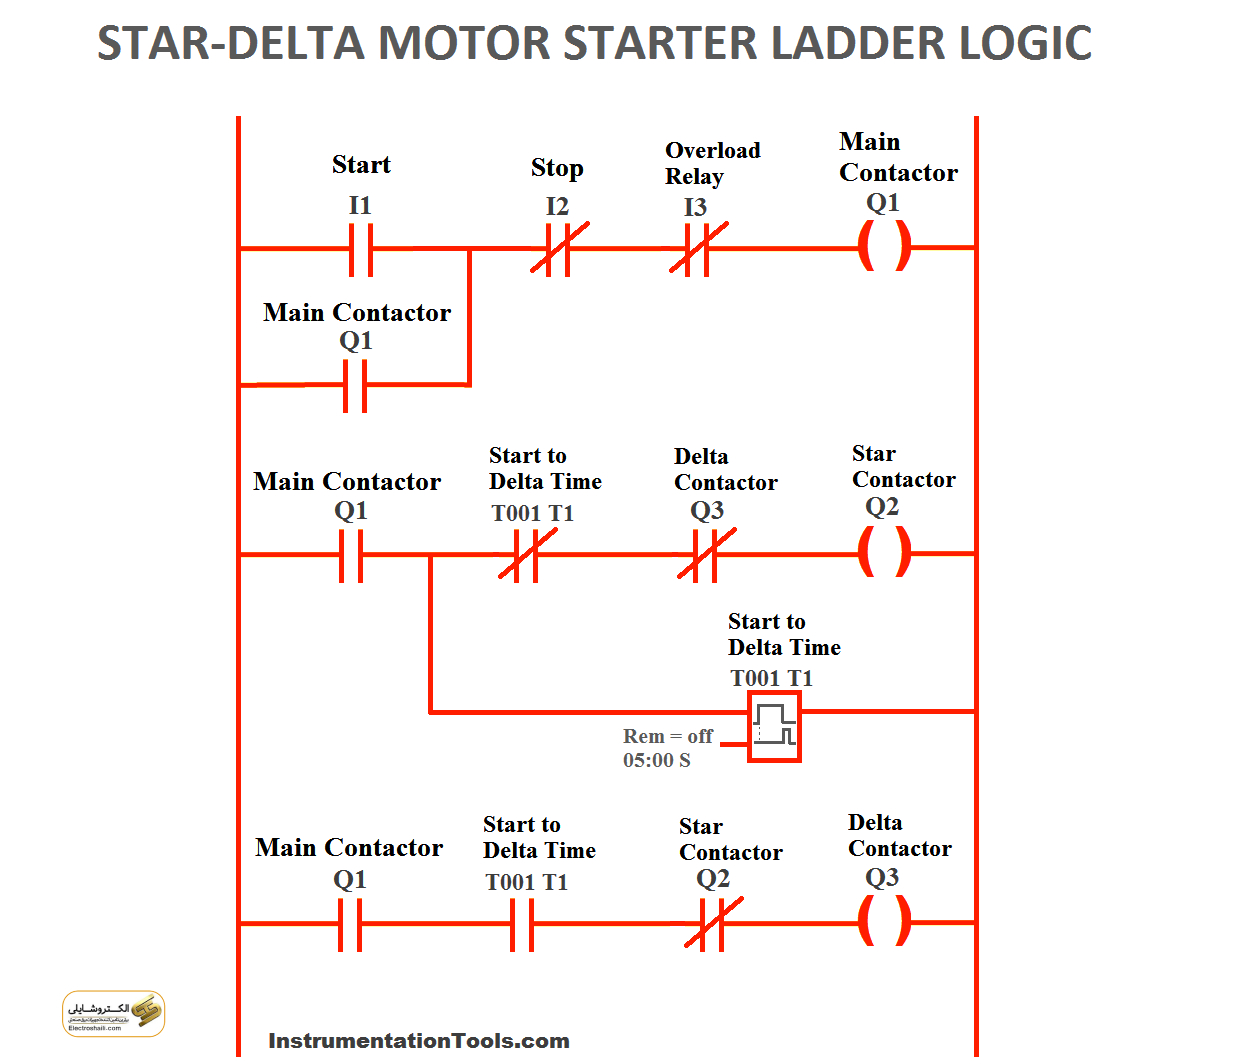 مدار الکتریکی ستاره – دلتا (Star-Delta Circuit)